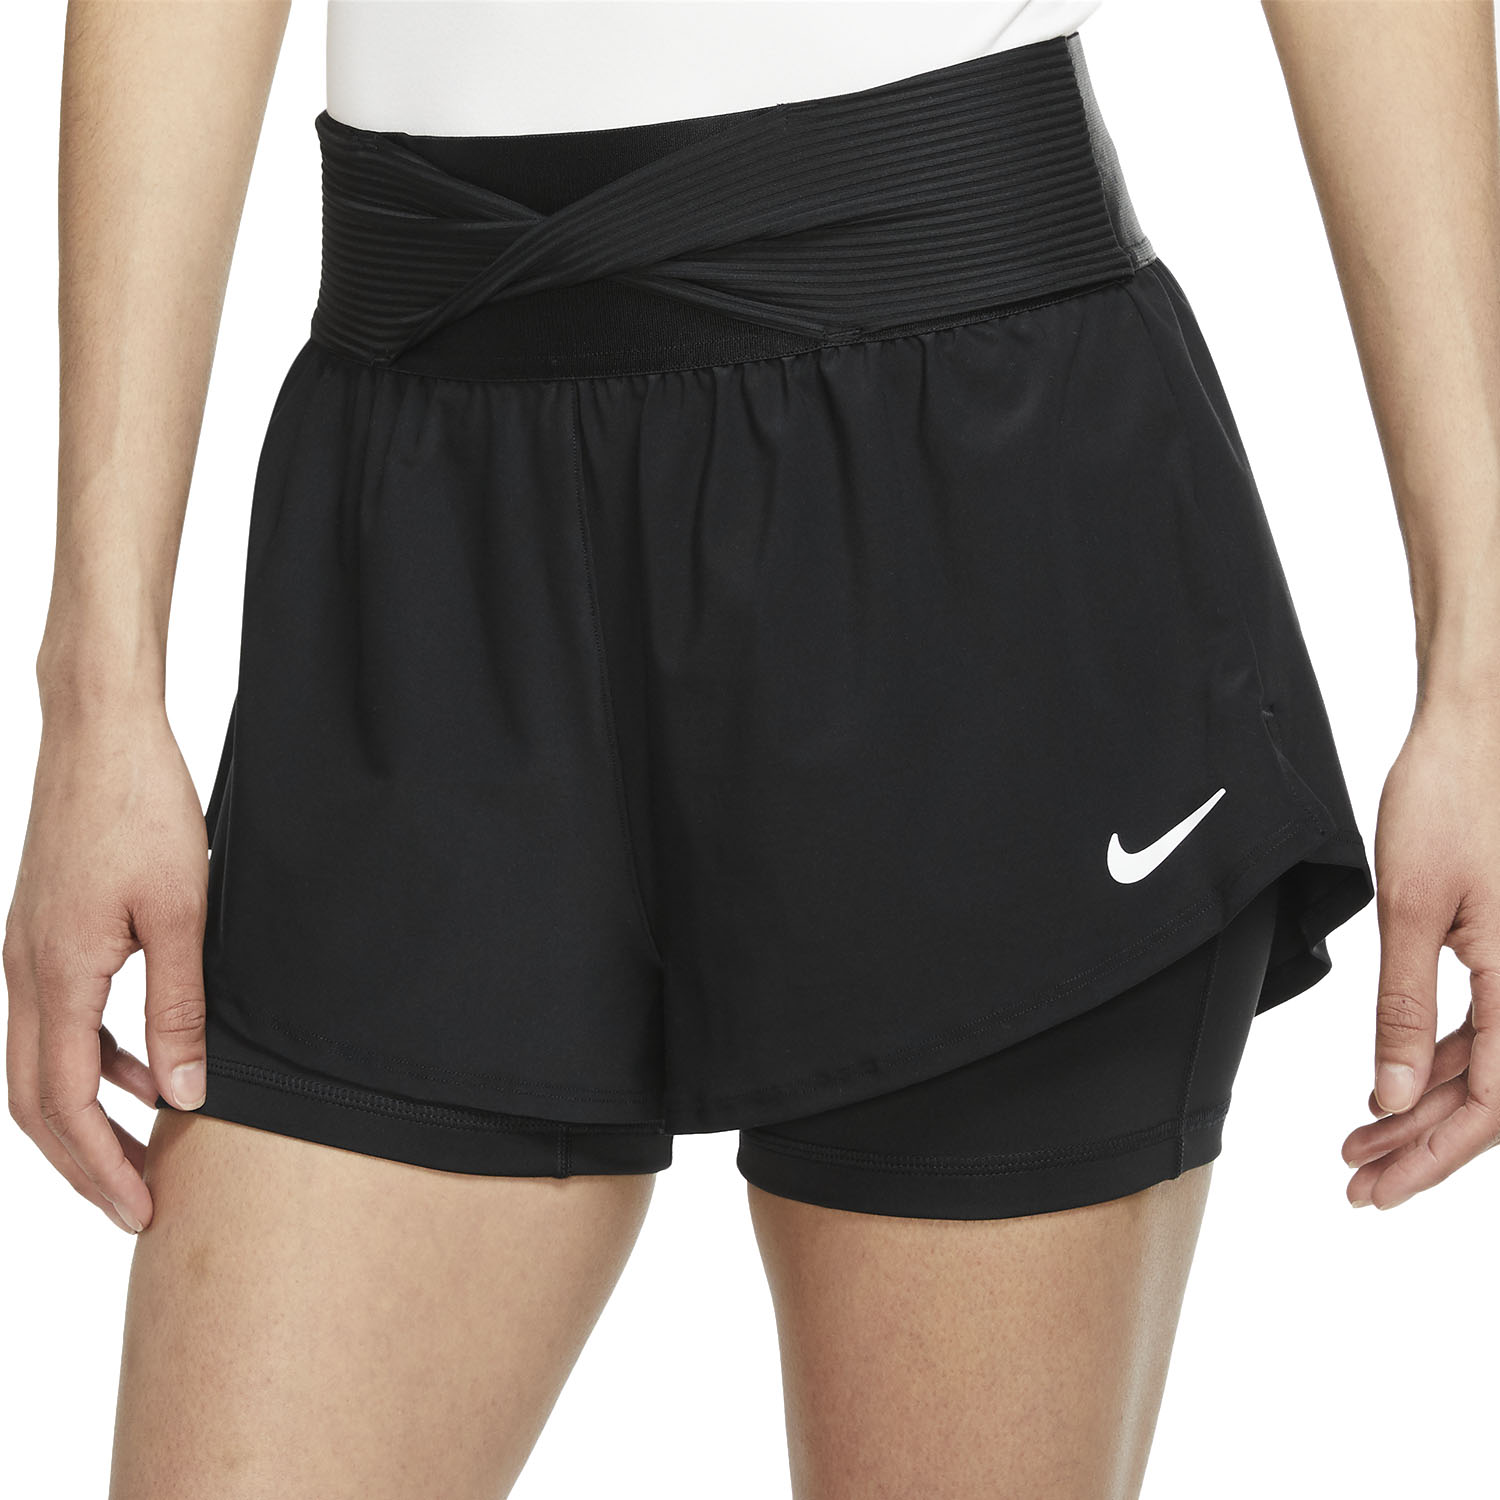 Nike dri fit tennis pants women dick's sporting goods